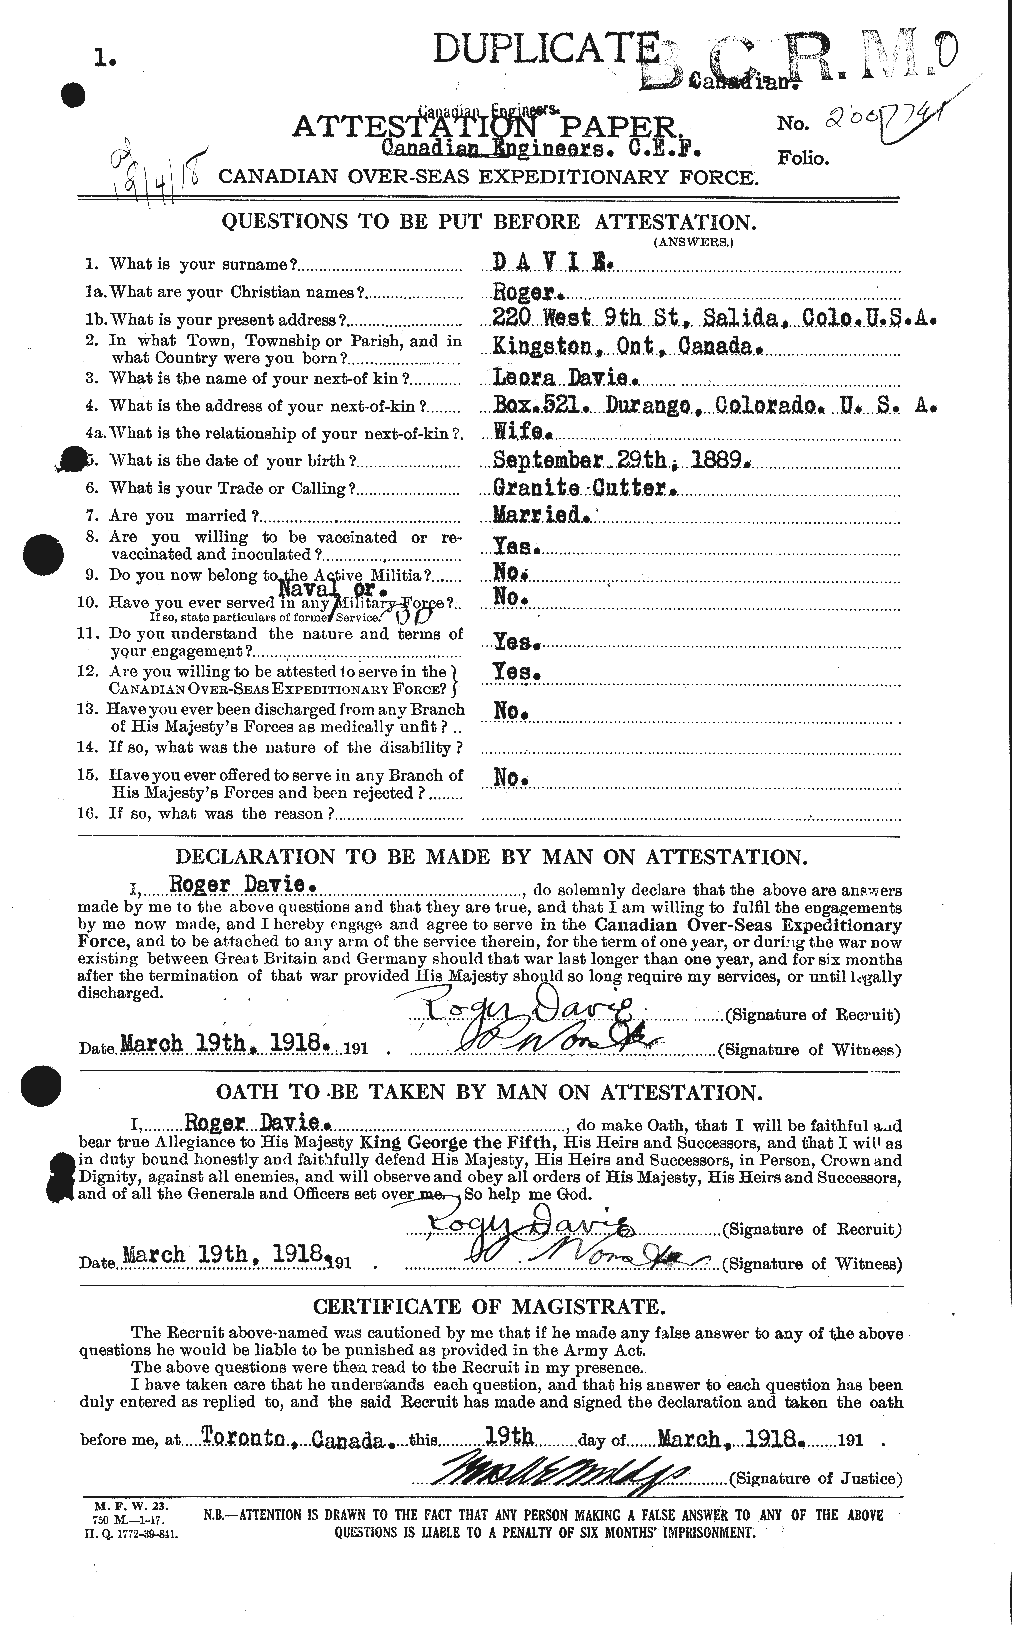 Dossiers du Personnel de la Première Guerre mondiale - CEC 278845a